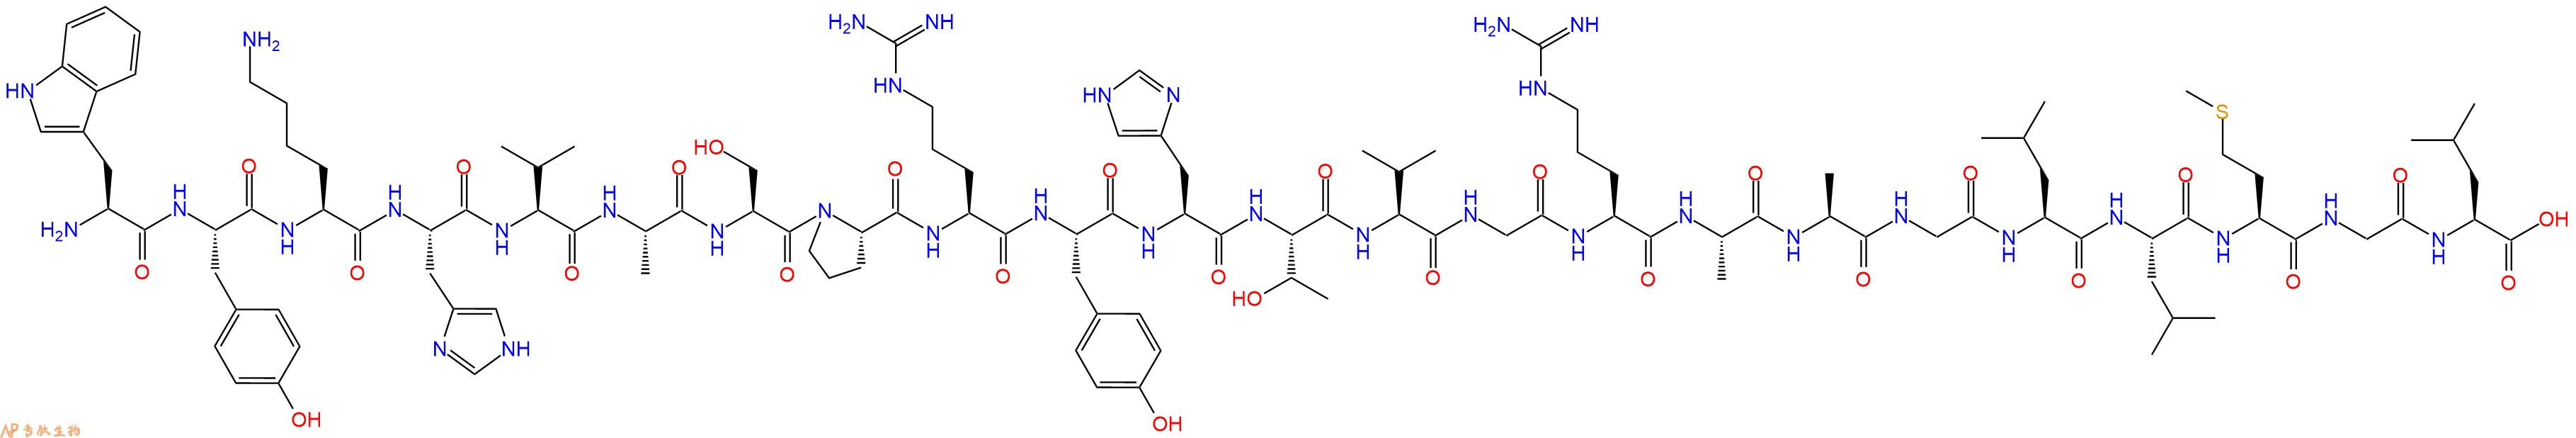 专肽生物产品神经肽W Neuro Peptide W-23 (human)383415-79-0